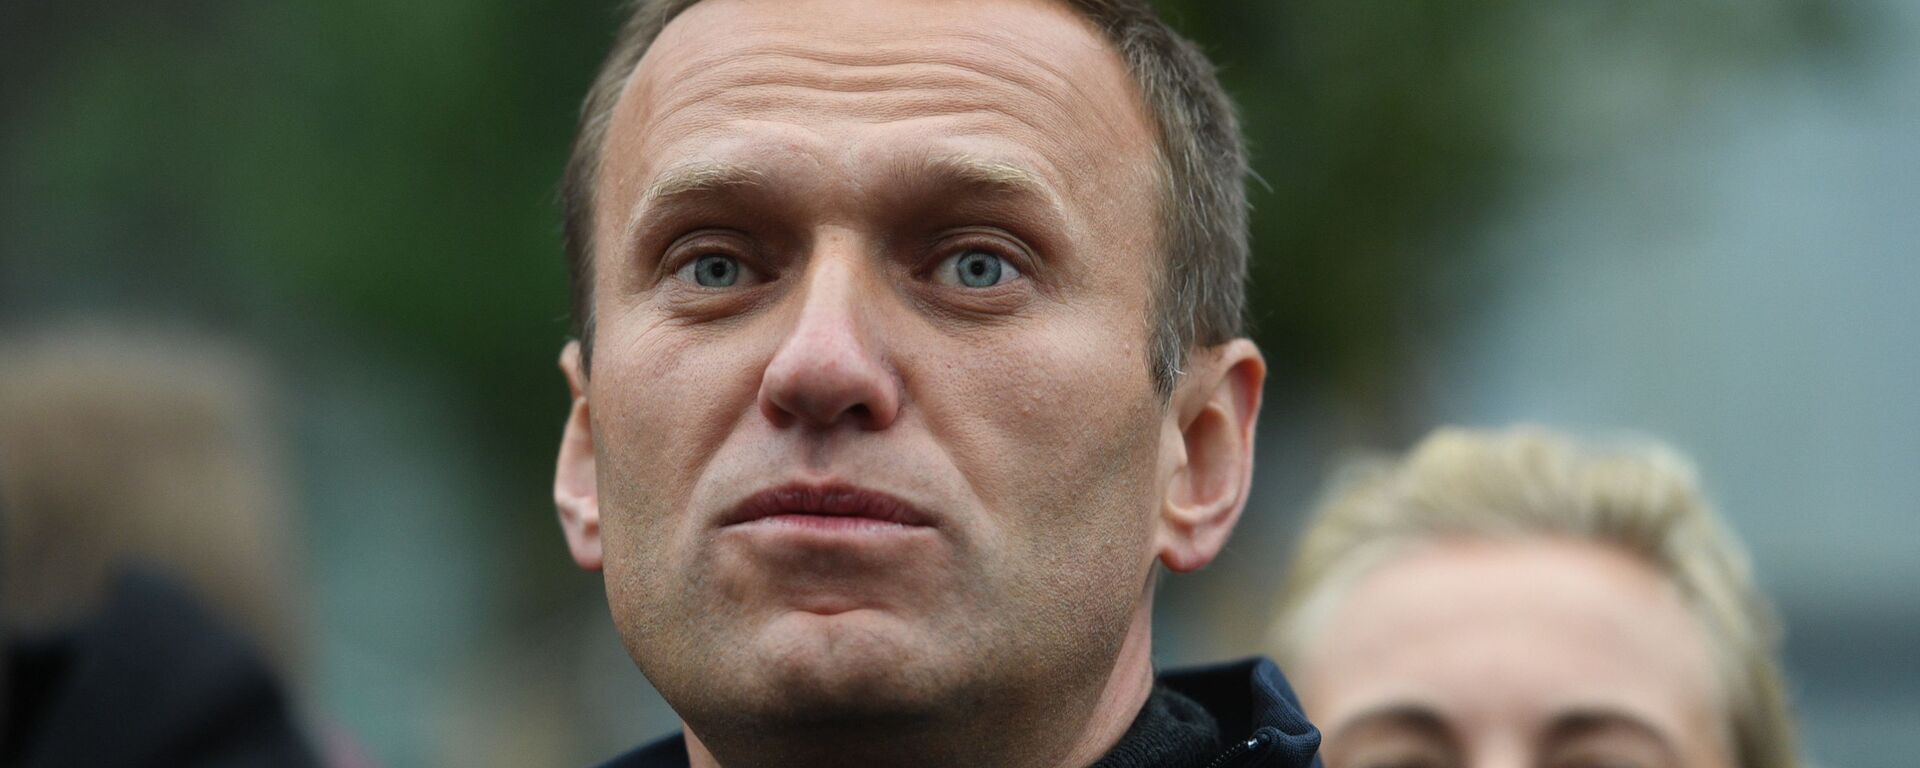 Политик Алексей Навальный  - Sputnik Արմենիա, 1920, 02.02.2021